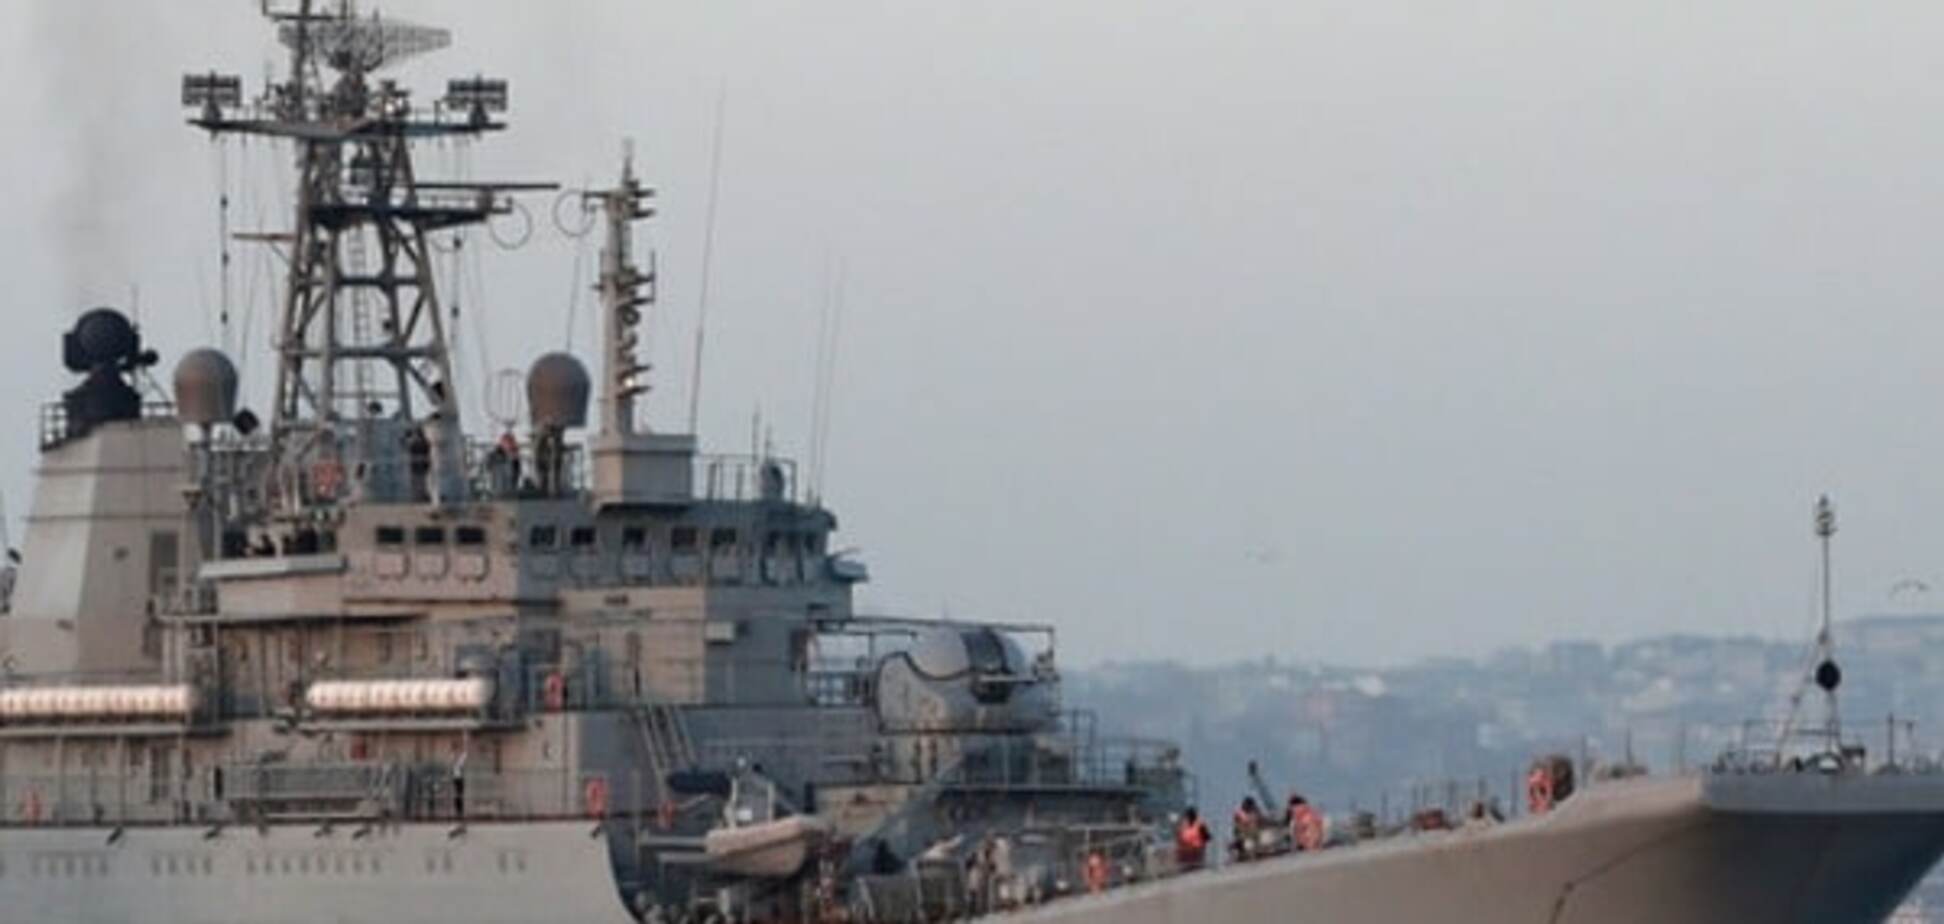 военный корабль РФ